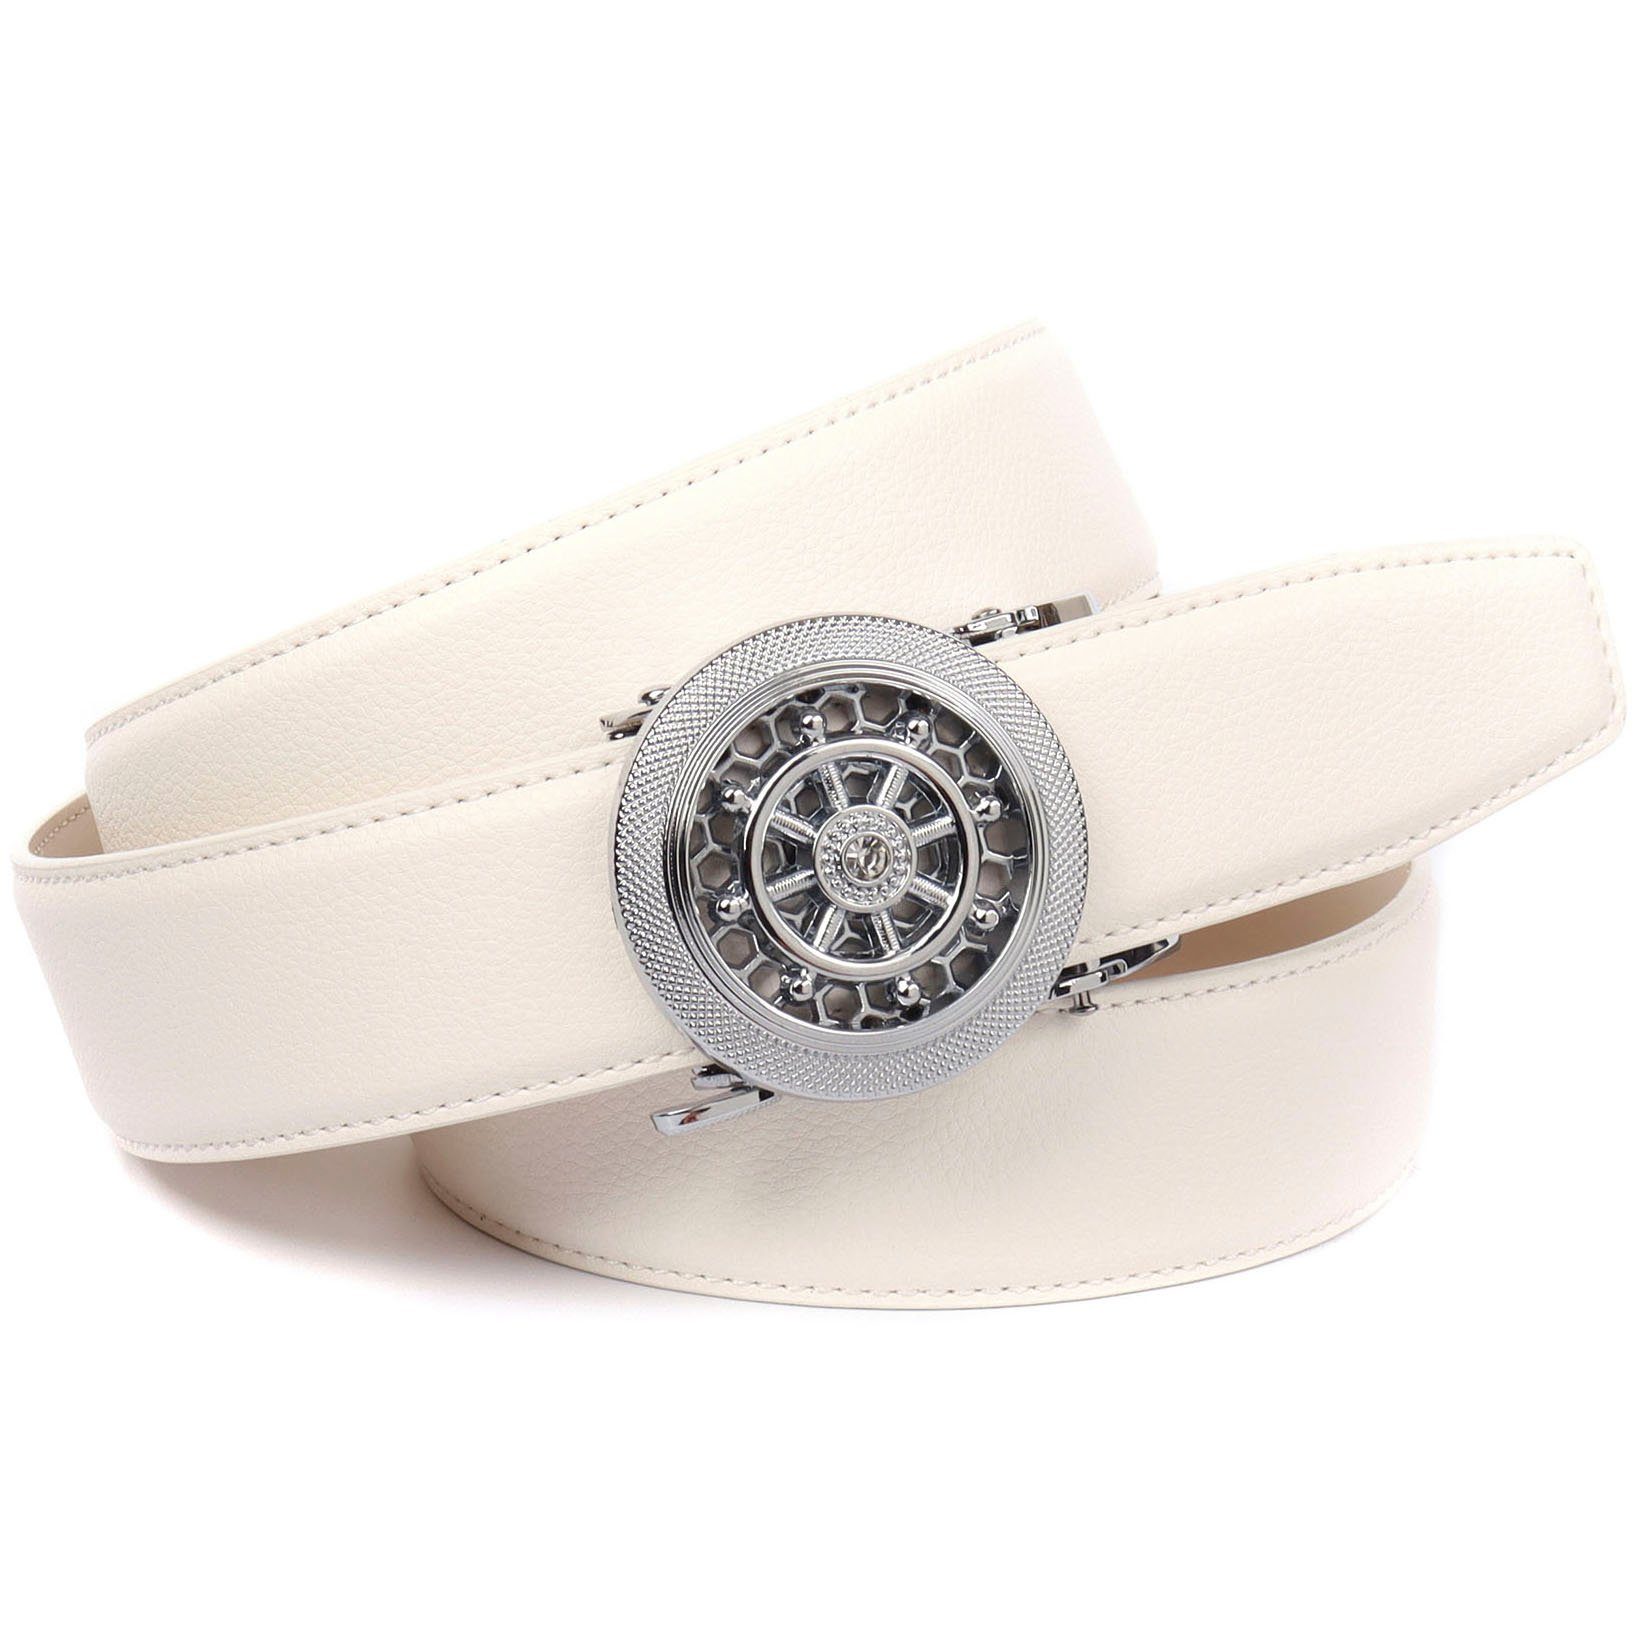 Crown Anthoni Automatik-Schließe drehendem mit Ledergürtel weiß Steuerruder silberfarbener und